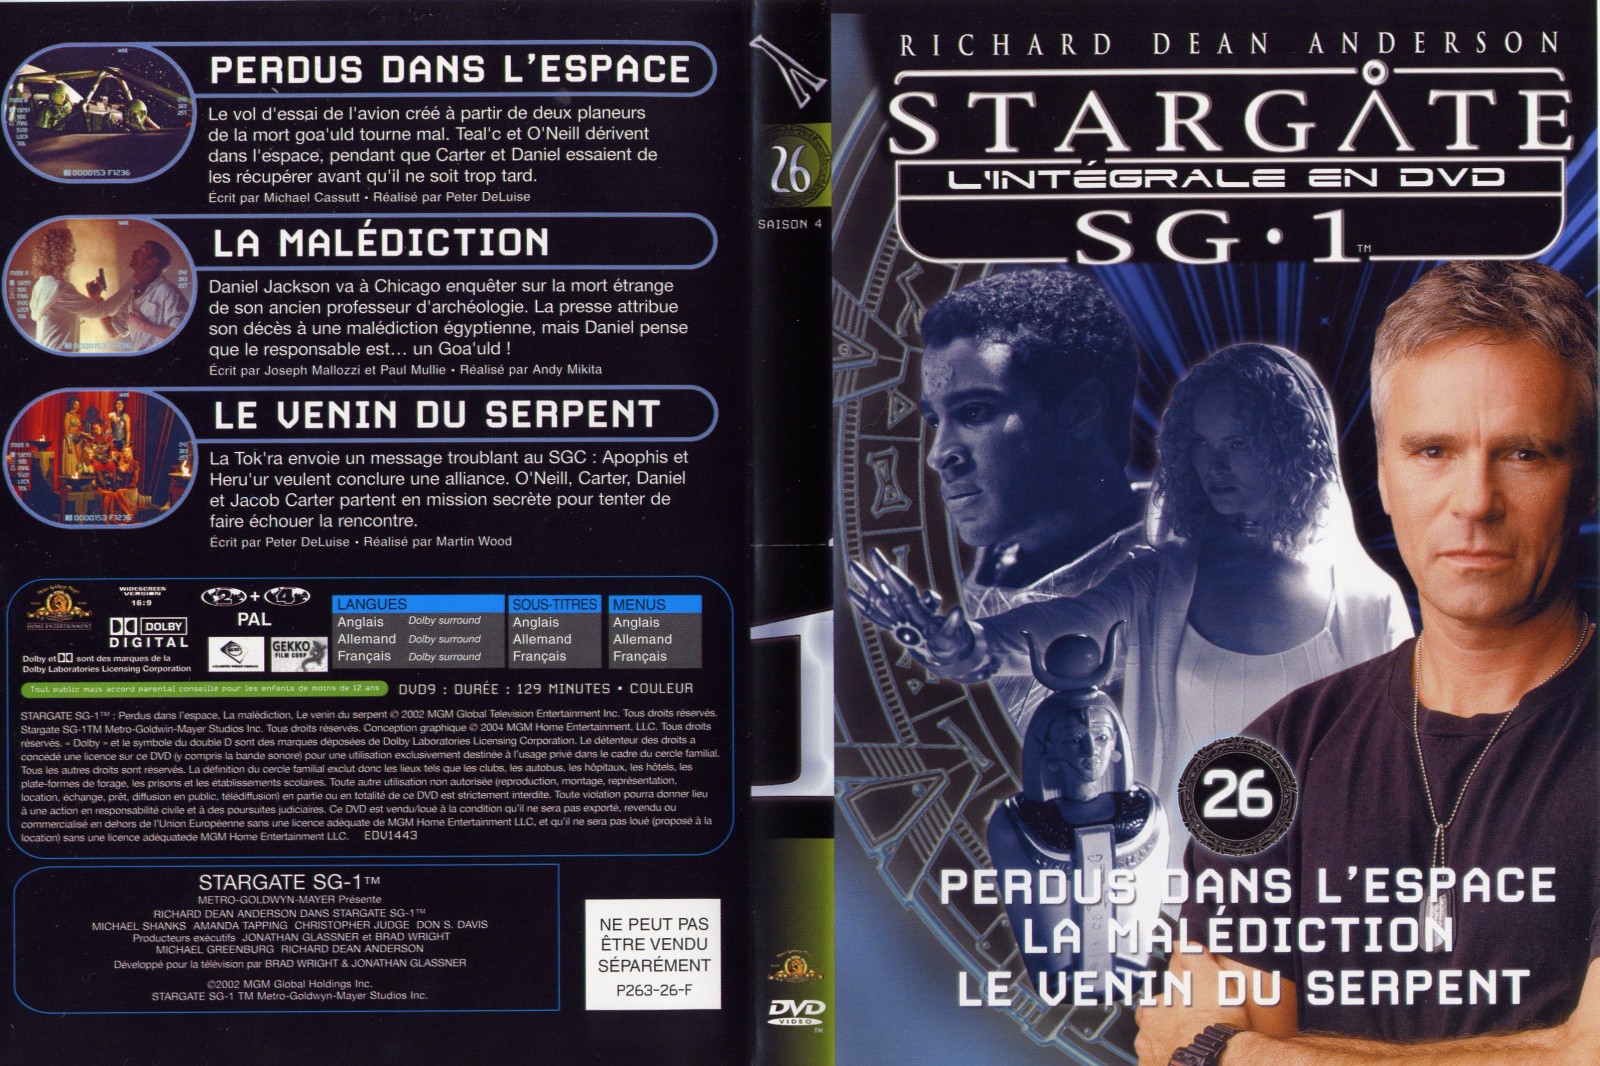 Jaquette DVD Stargate saison 4 vol 26